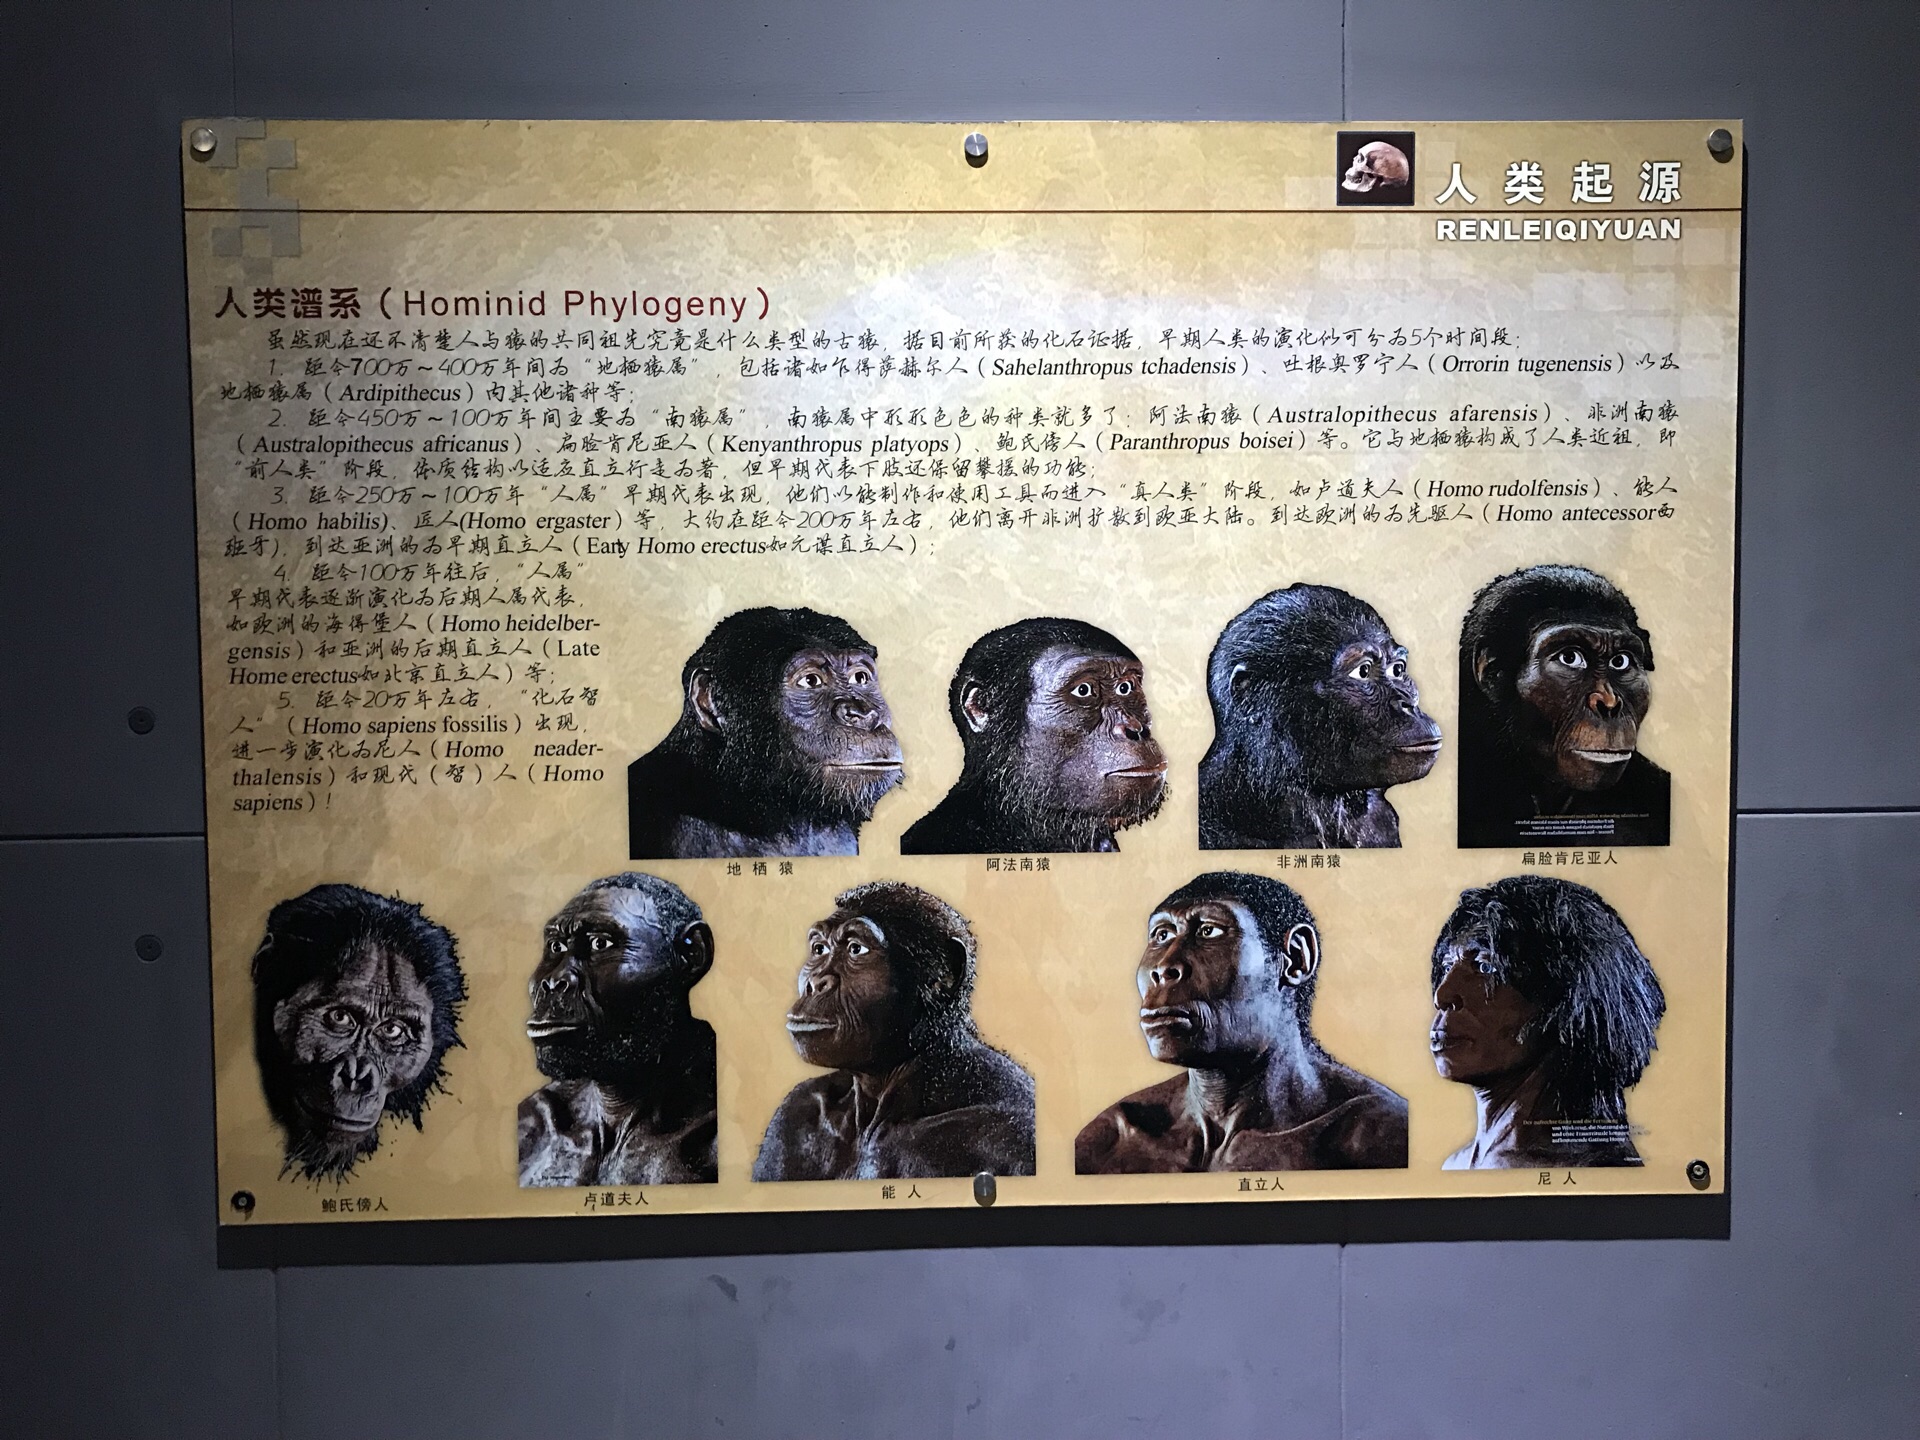 元谋人从哪里来(2月)|云南省文物考古研究所